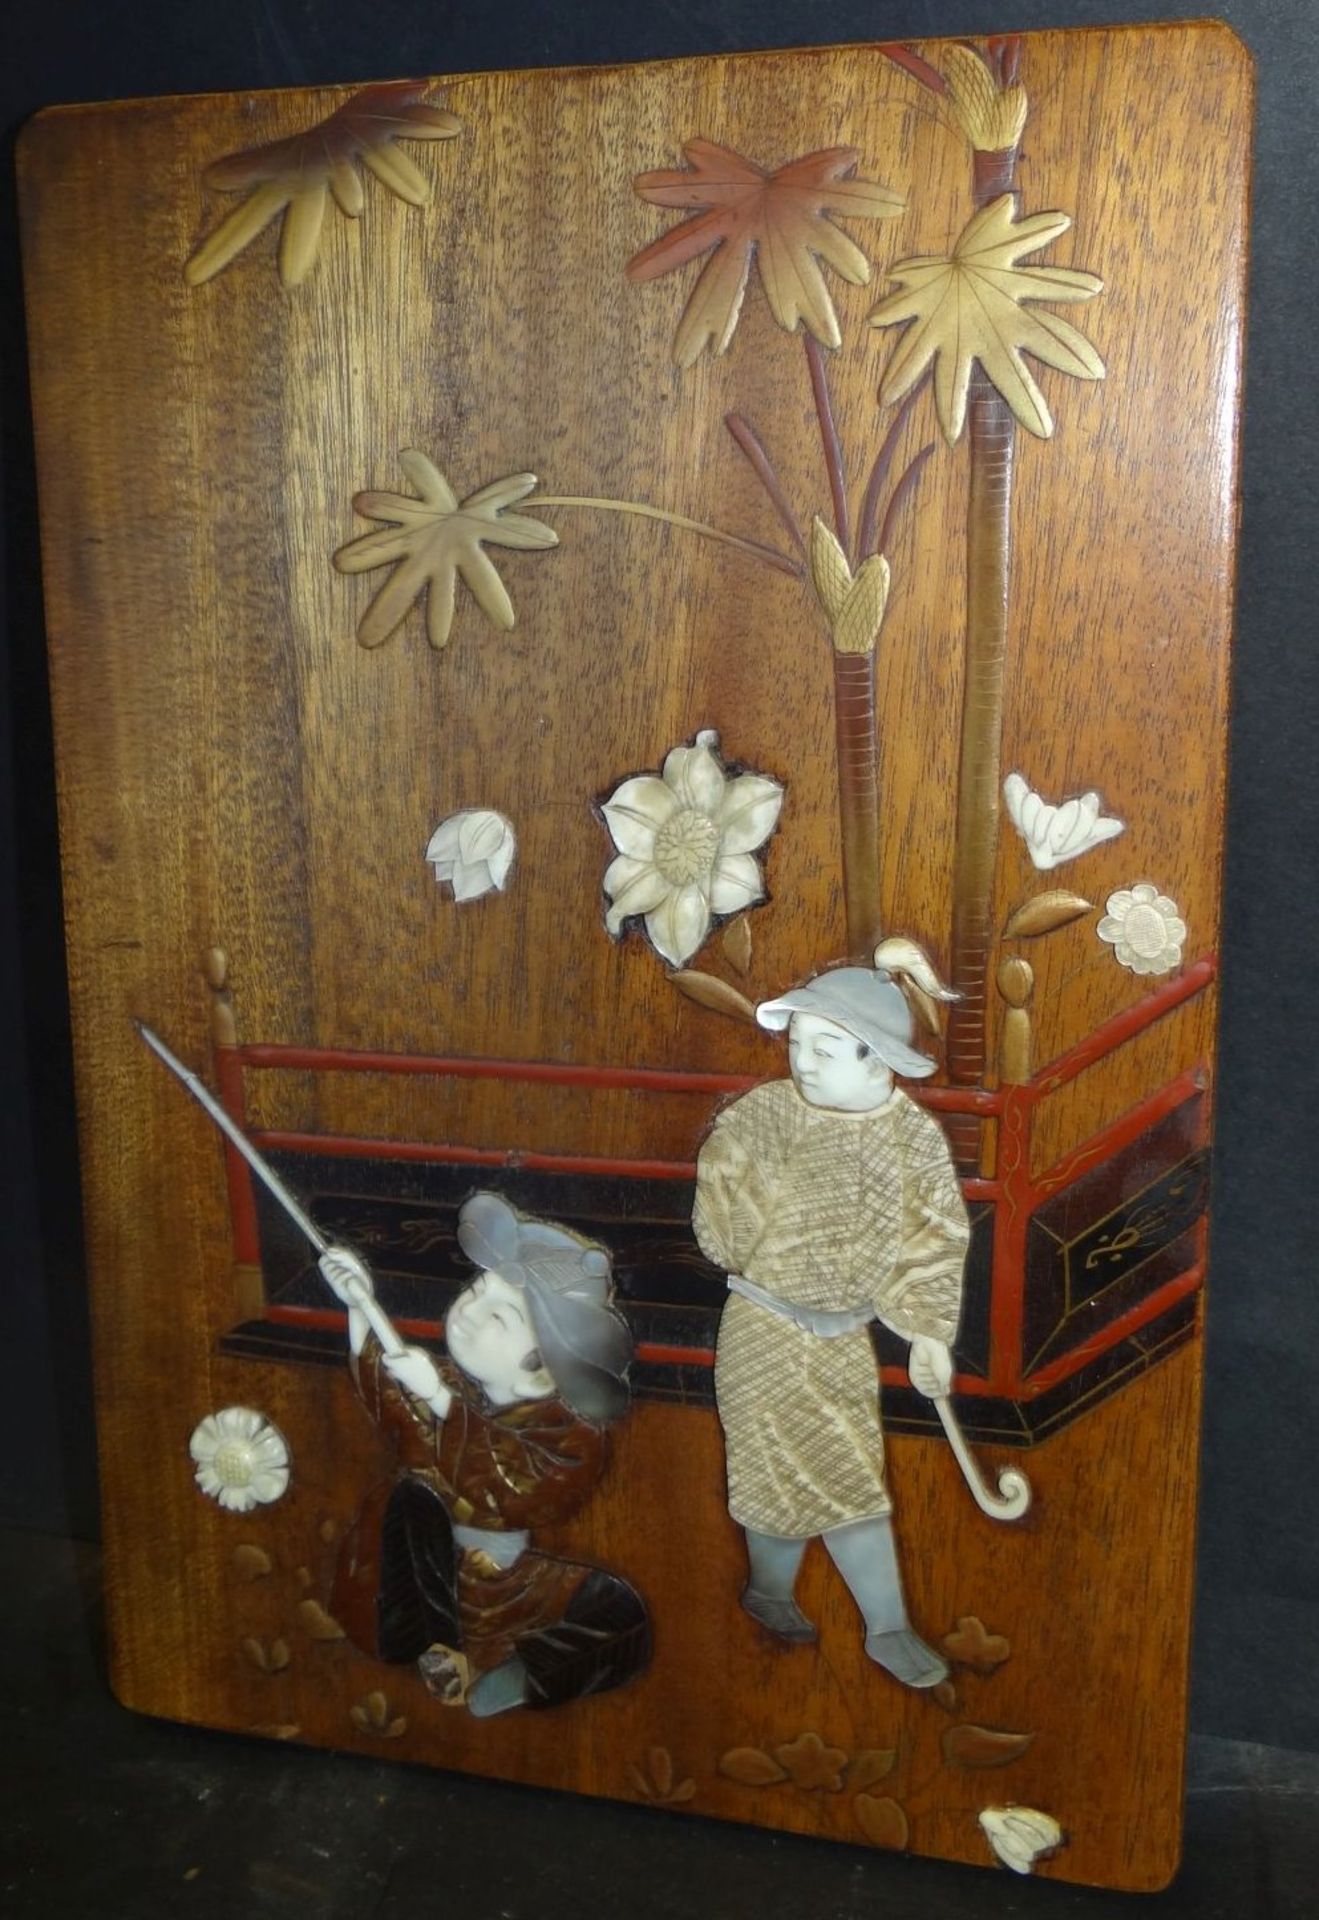 Holzplatte m it Perlmutt Einlagen etc., wohl Japan, 26x17 cm, kl. Fehlteile - Bild 2 aus 4